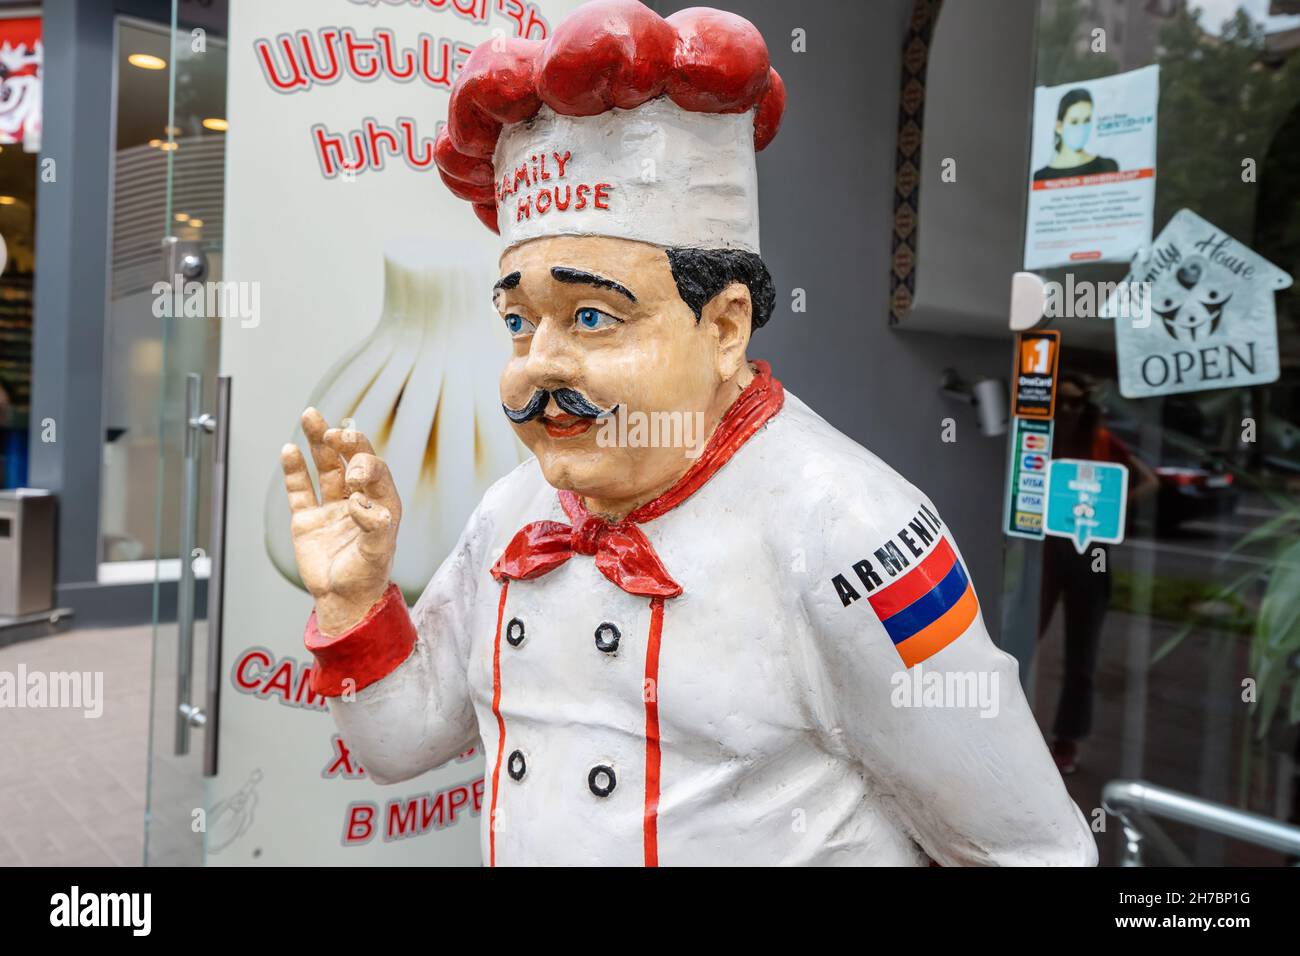 25 mai 2021, Erevan, Arménie : statue amusante d'un chef arménien à l'entrée d'un restaurant de cuisine caucasienne Banque D'Images